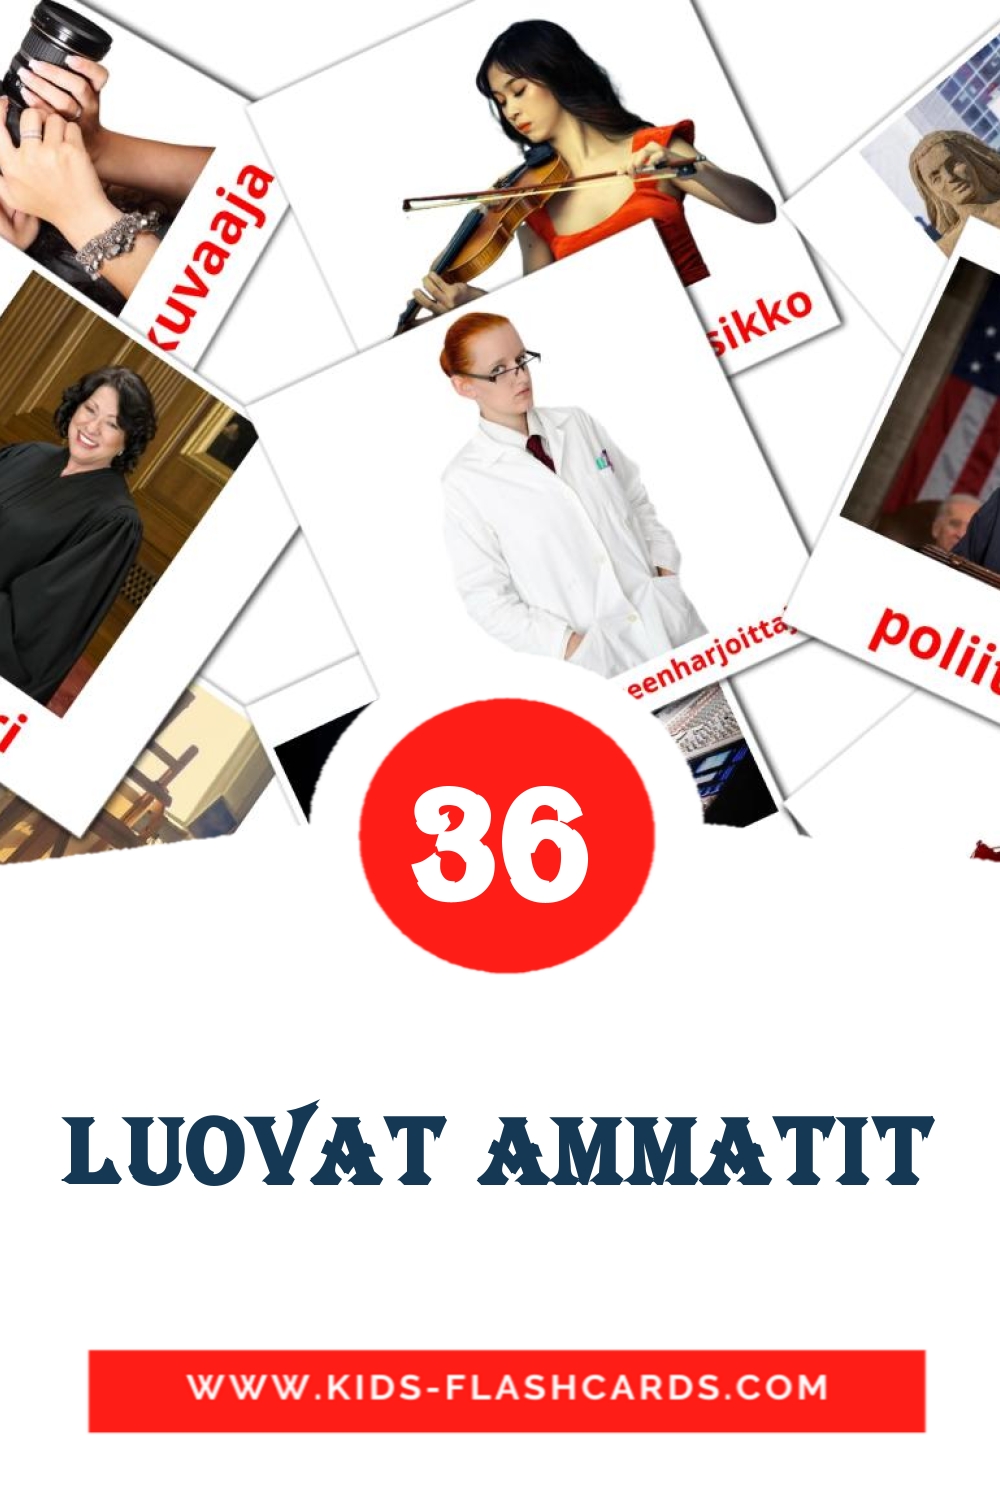 Luovat ammatit на финском для Детского Сада (36 карточек)